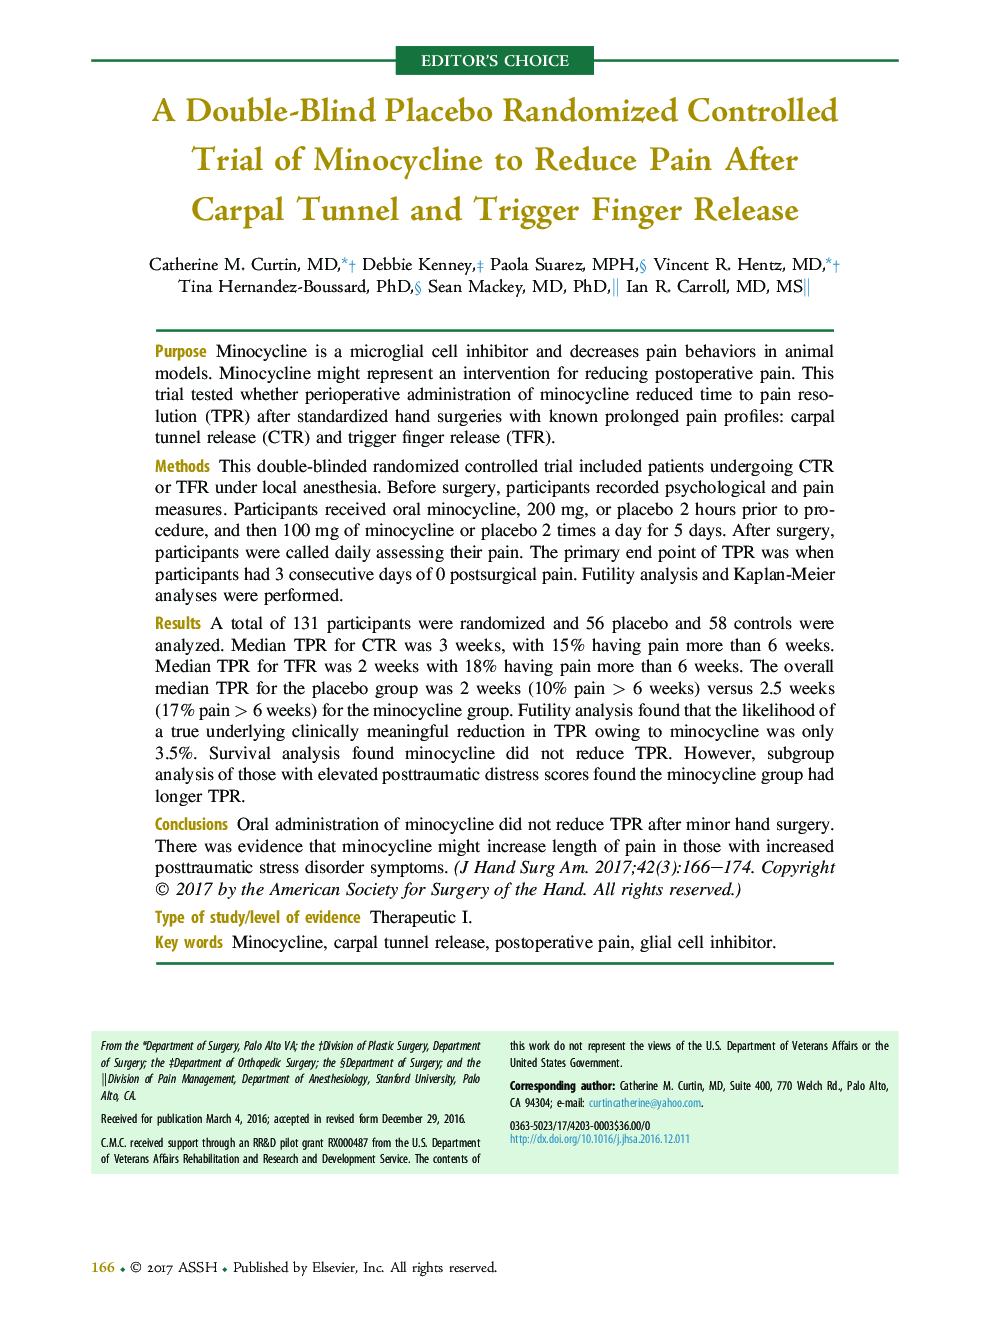 یک آزمایش کنترل شده به صورت تصادفی دوسوکور مینی سیکلین برای کاهش درد بعد از تونل کارپال و تسریع انتشار انگشت 